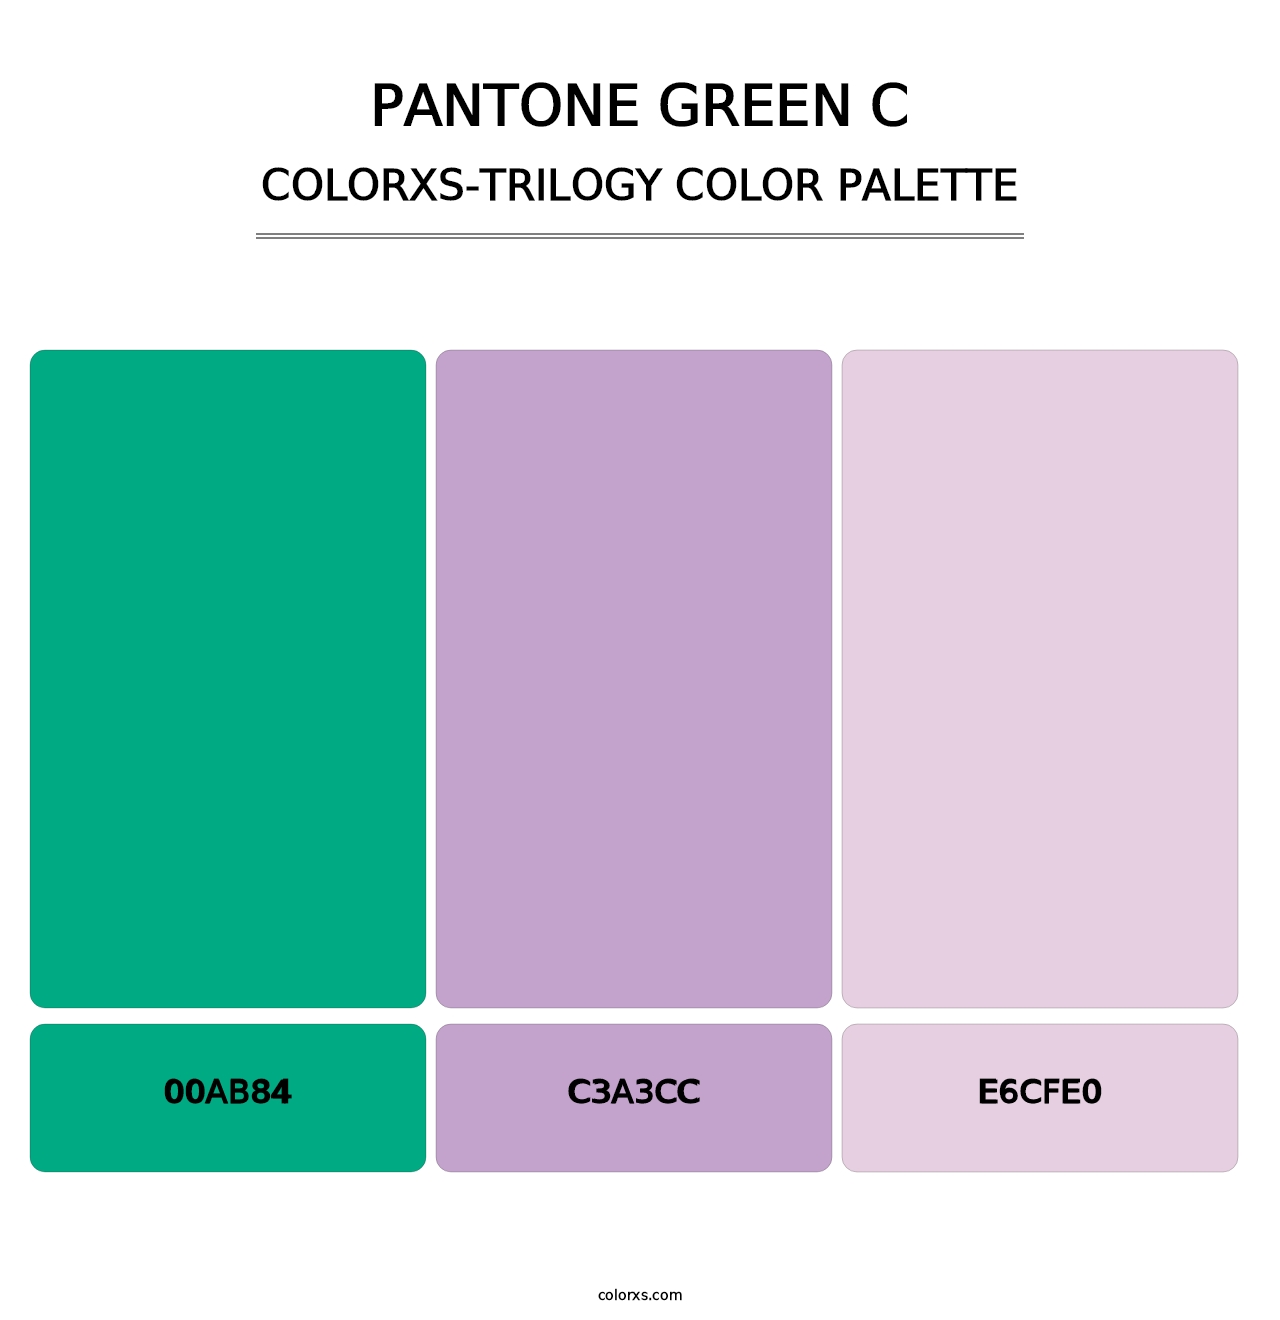 PANTONE Green C - Colorxs Trilogy Palette